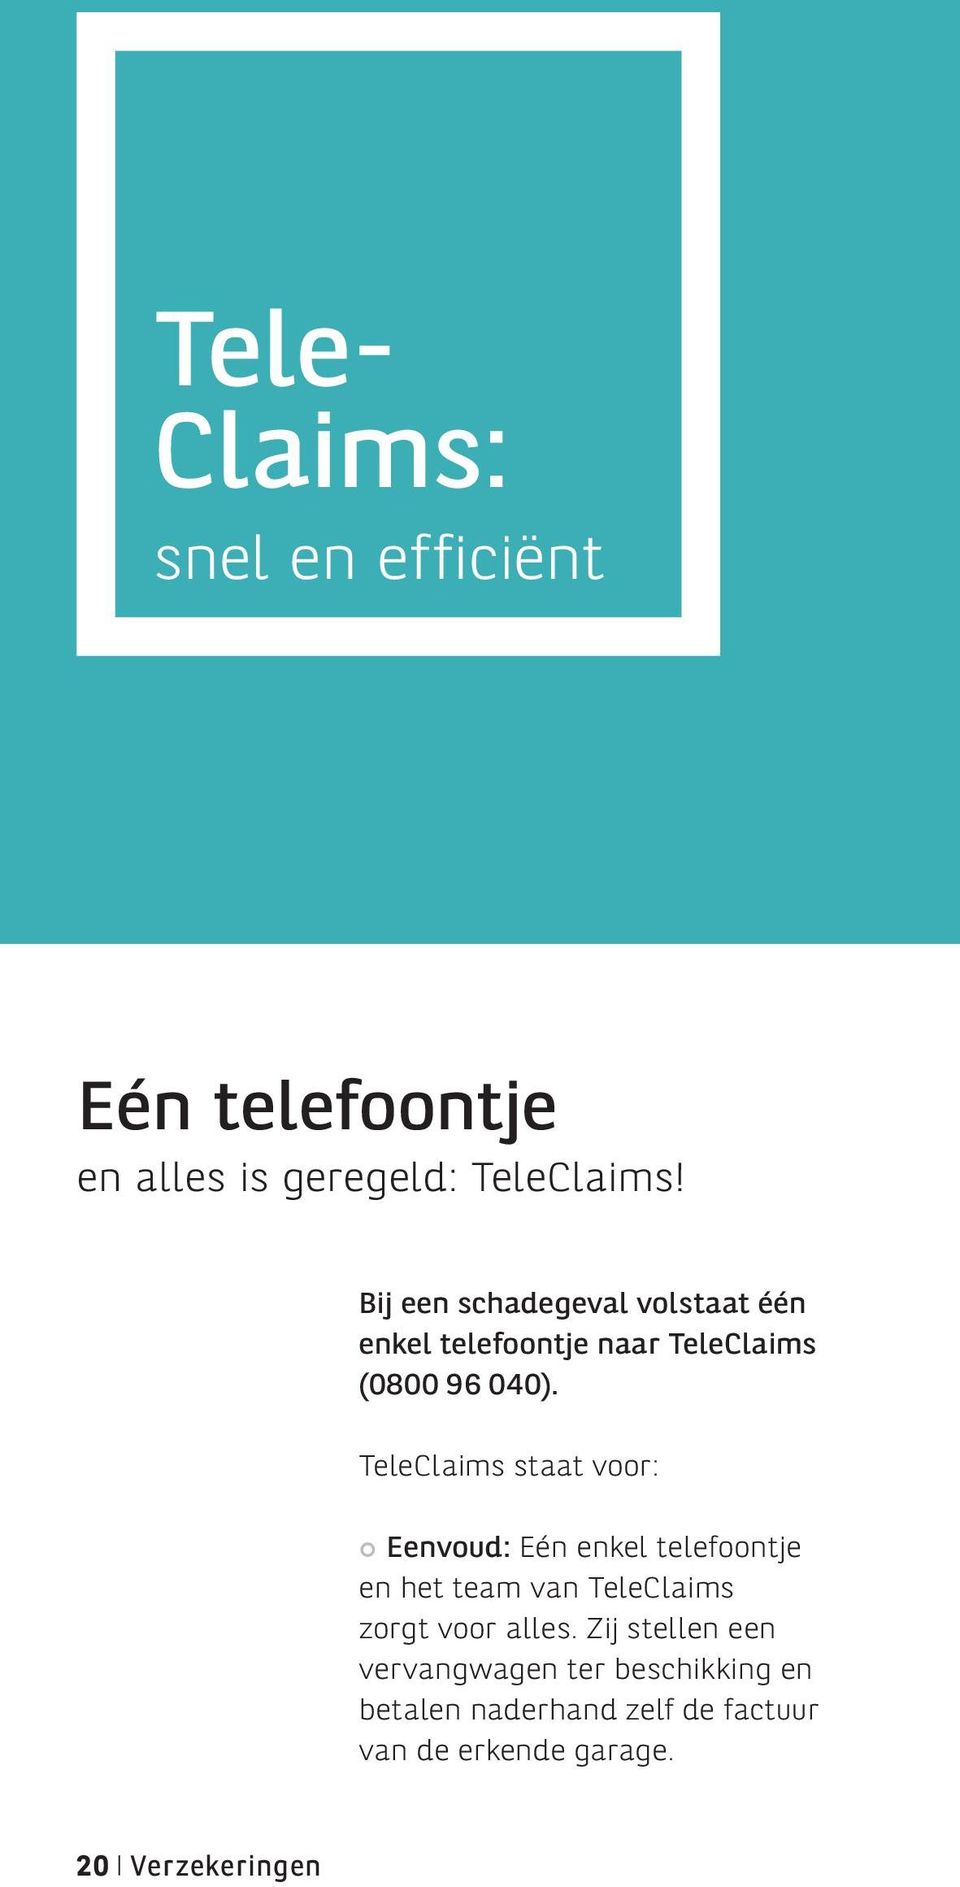 TeleClaims staat voor: Eenvoud: Eén enkel telefoontje en het team van TeleClaims zorgt voor